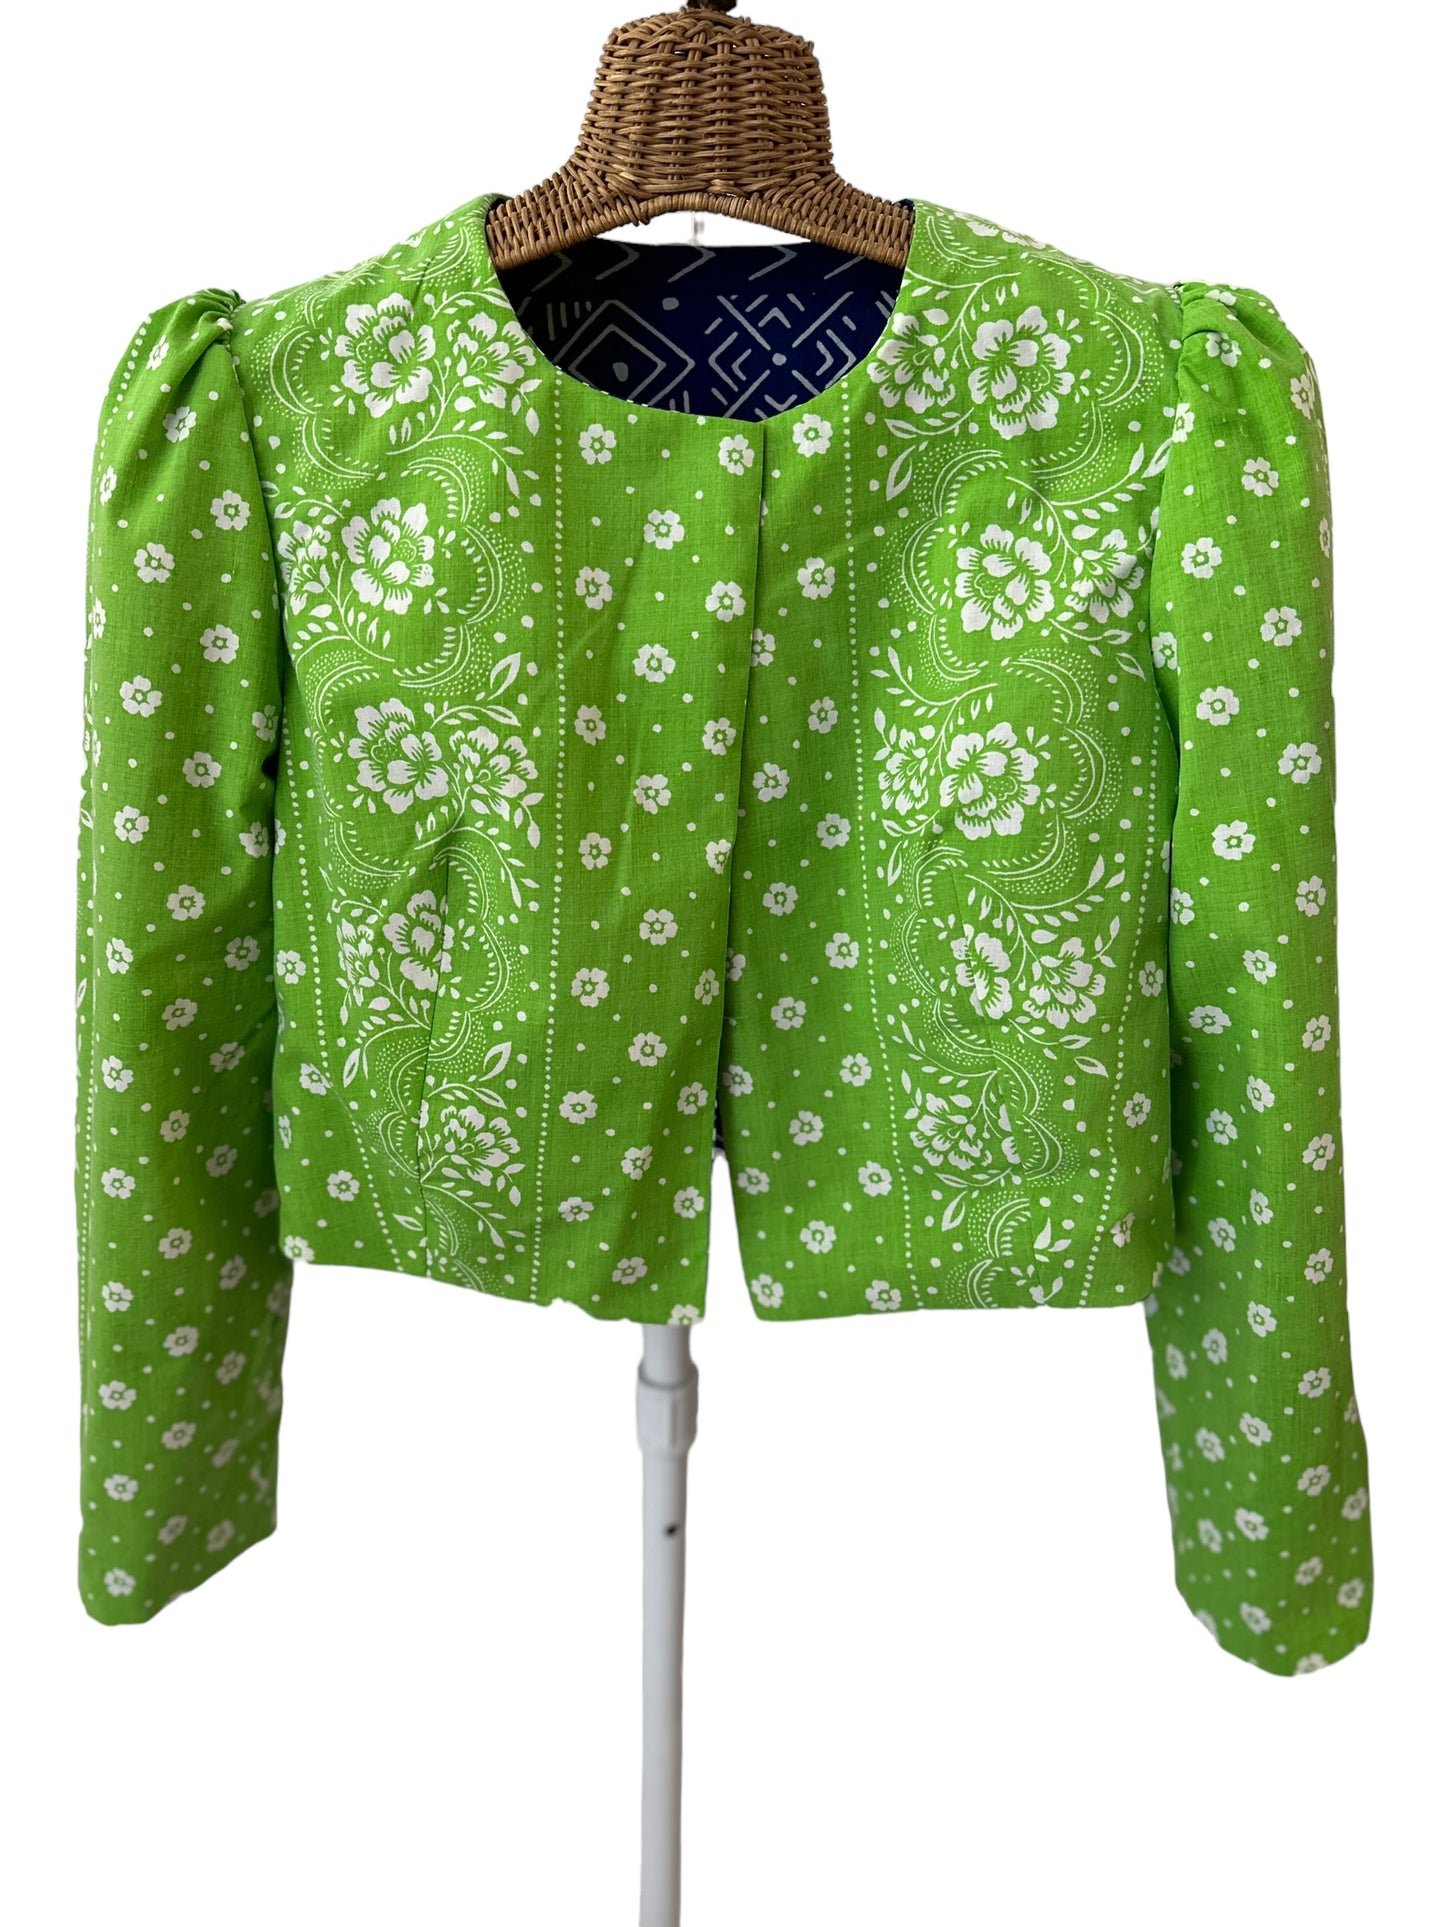 Mila jacket in Cobalt Cutie/Green Queen